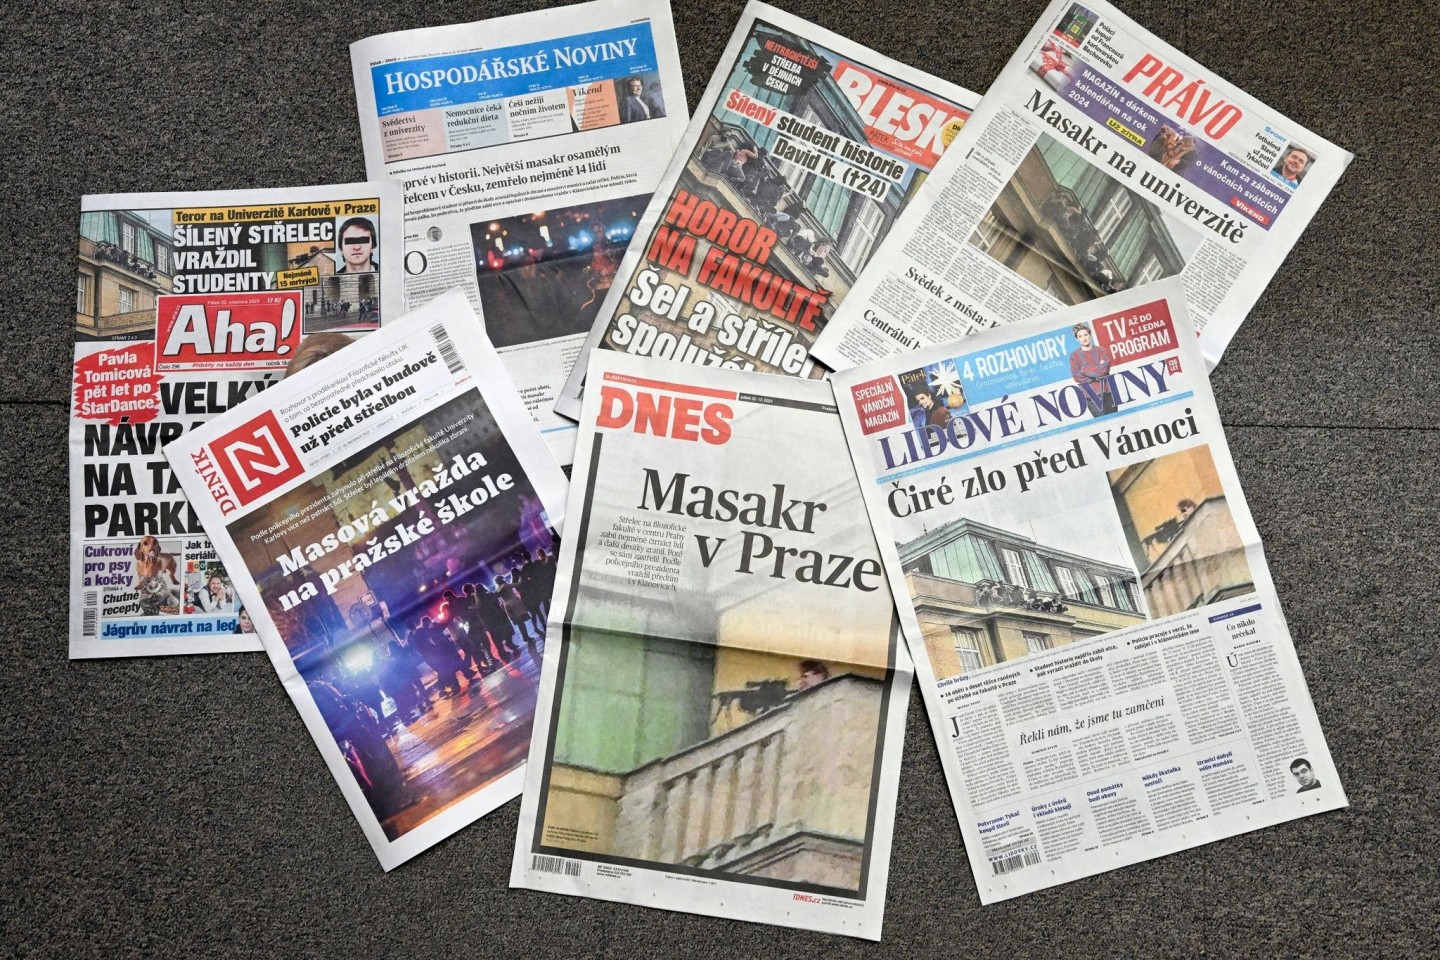 Die Titelseiten tschechischer Tageszeitungen nach der tragischen Schusswaffenattacke an der Philosophischen Fakultät der Karls-Universität.